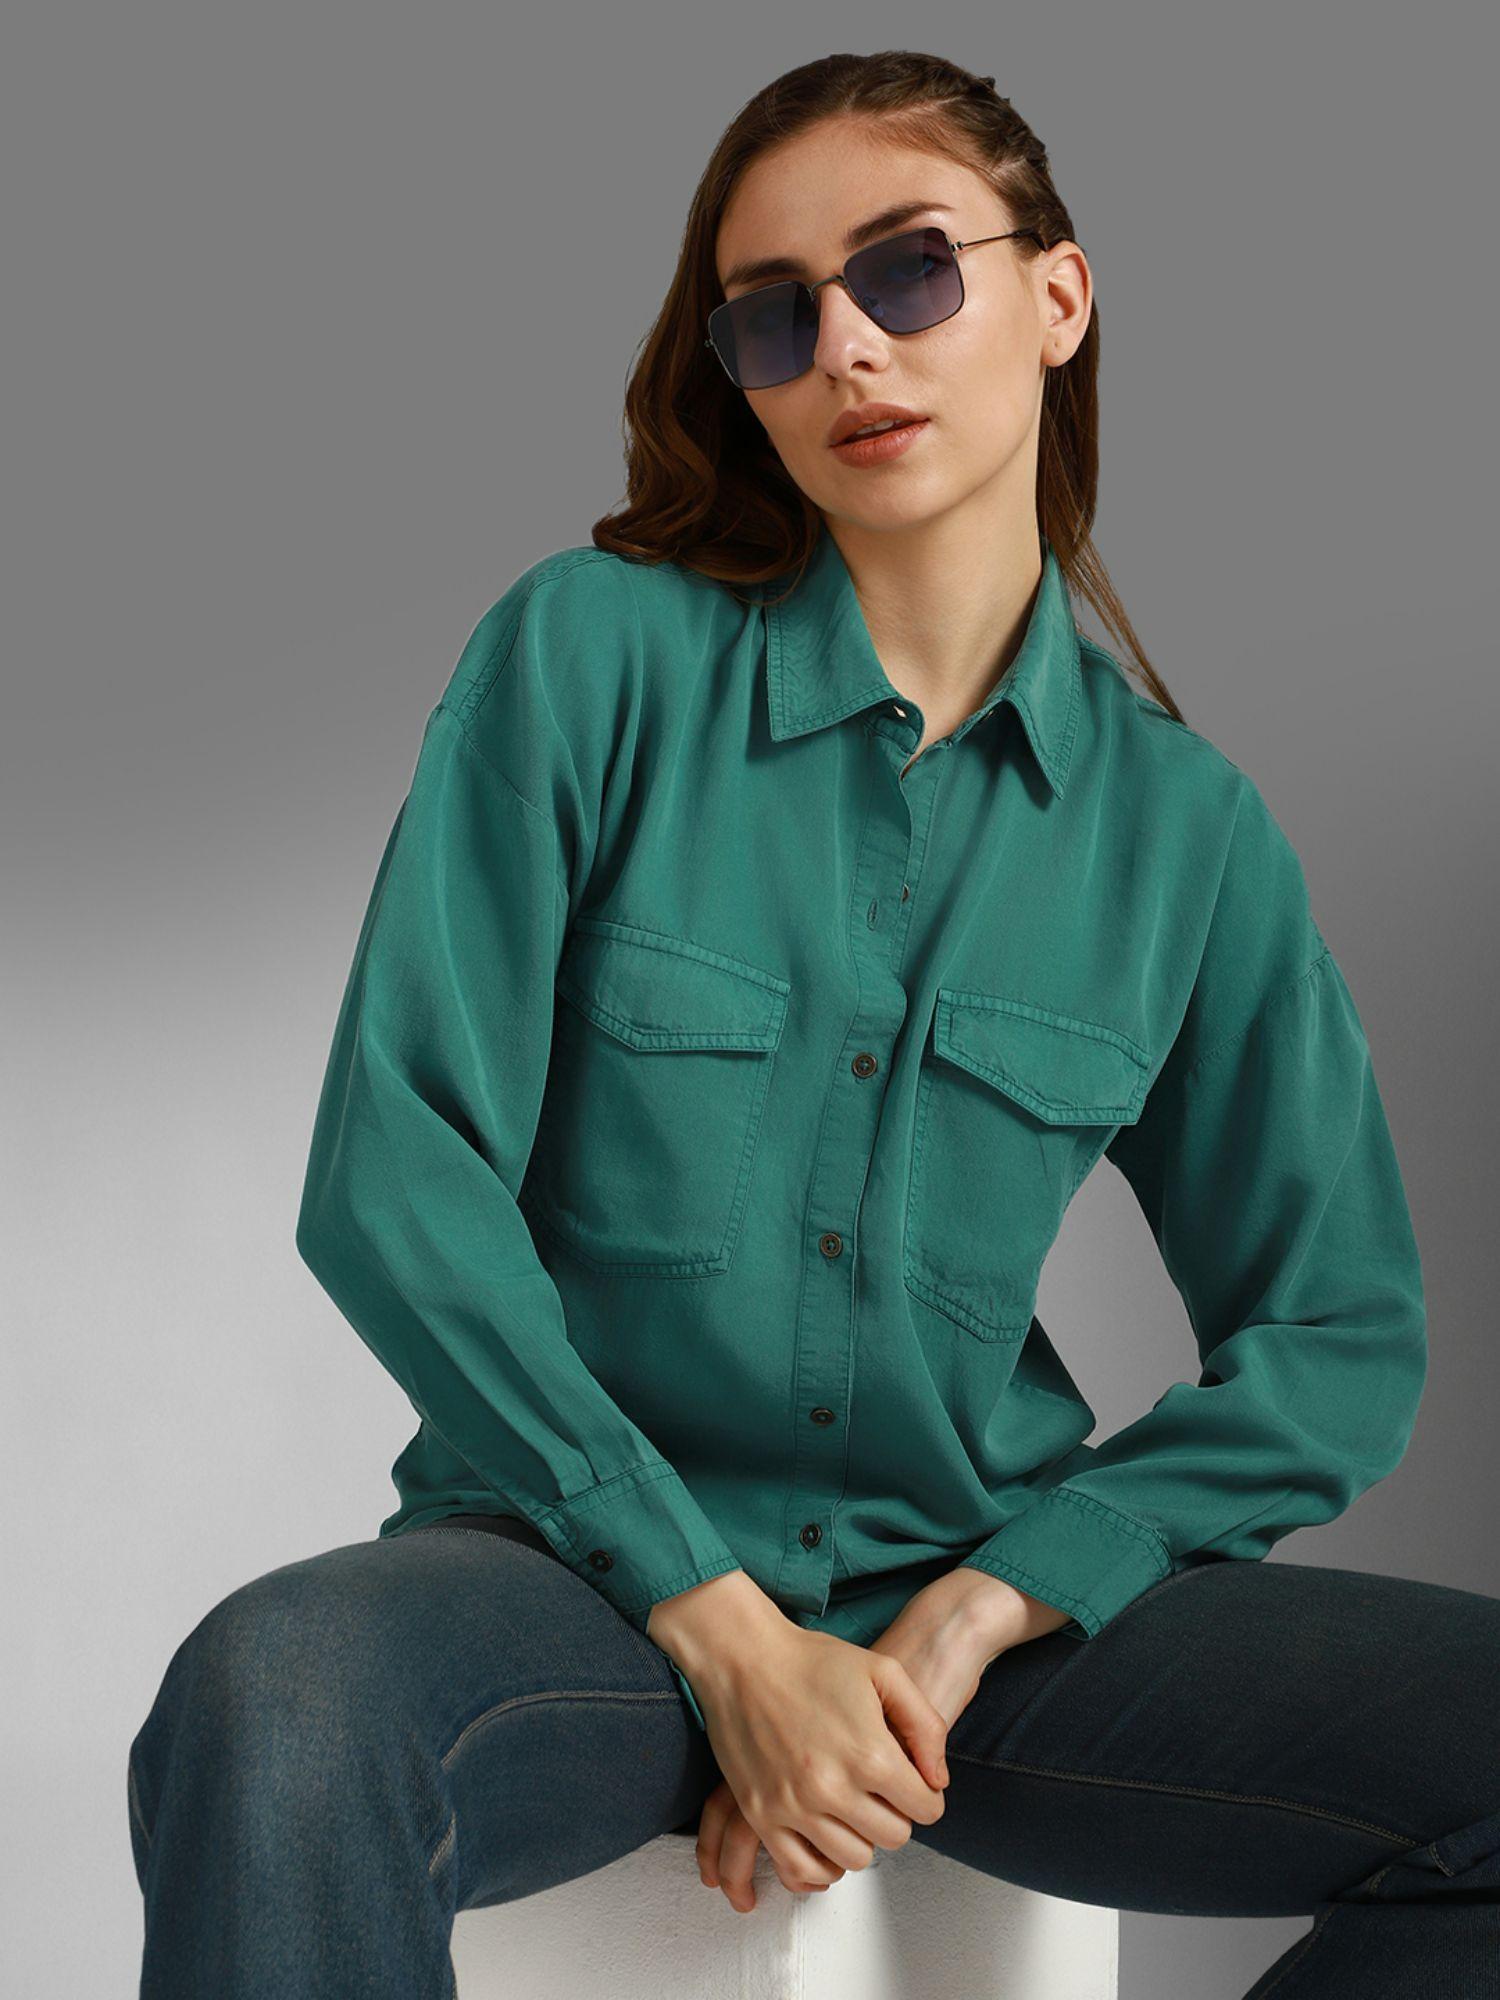 hubber holme green cotton spread collar woven shirt